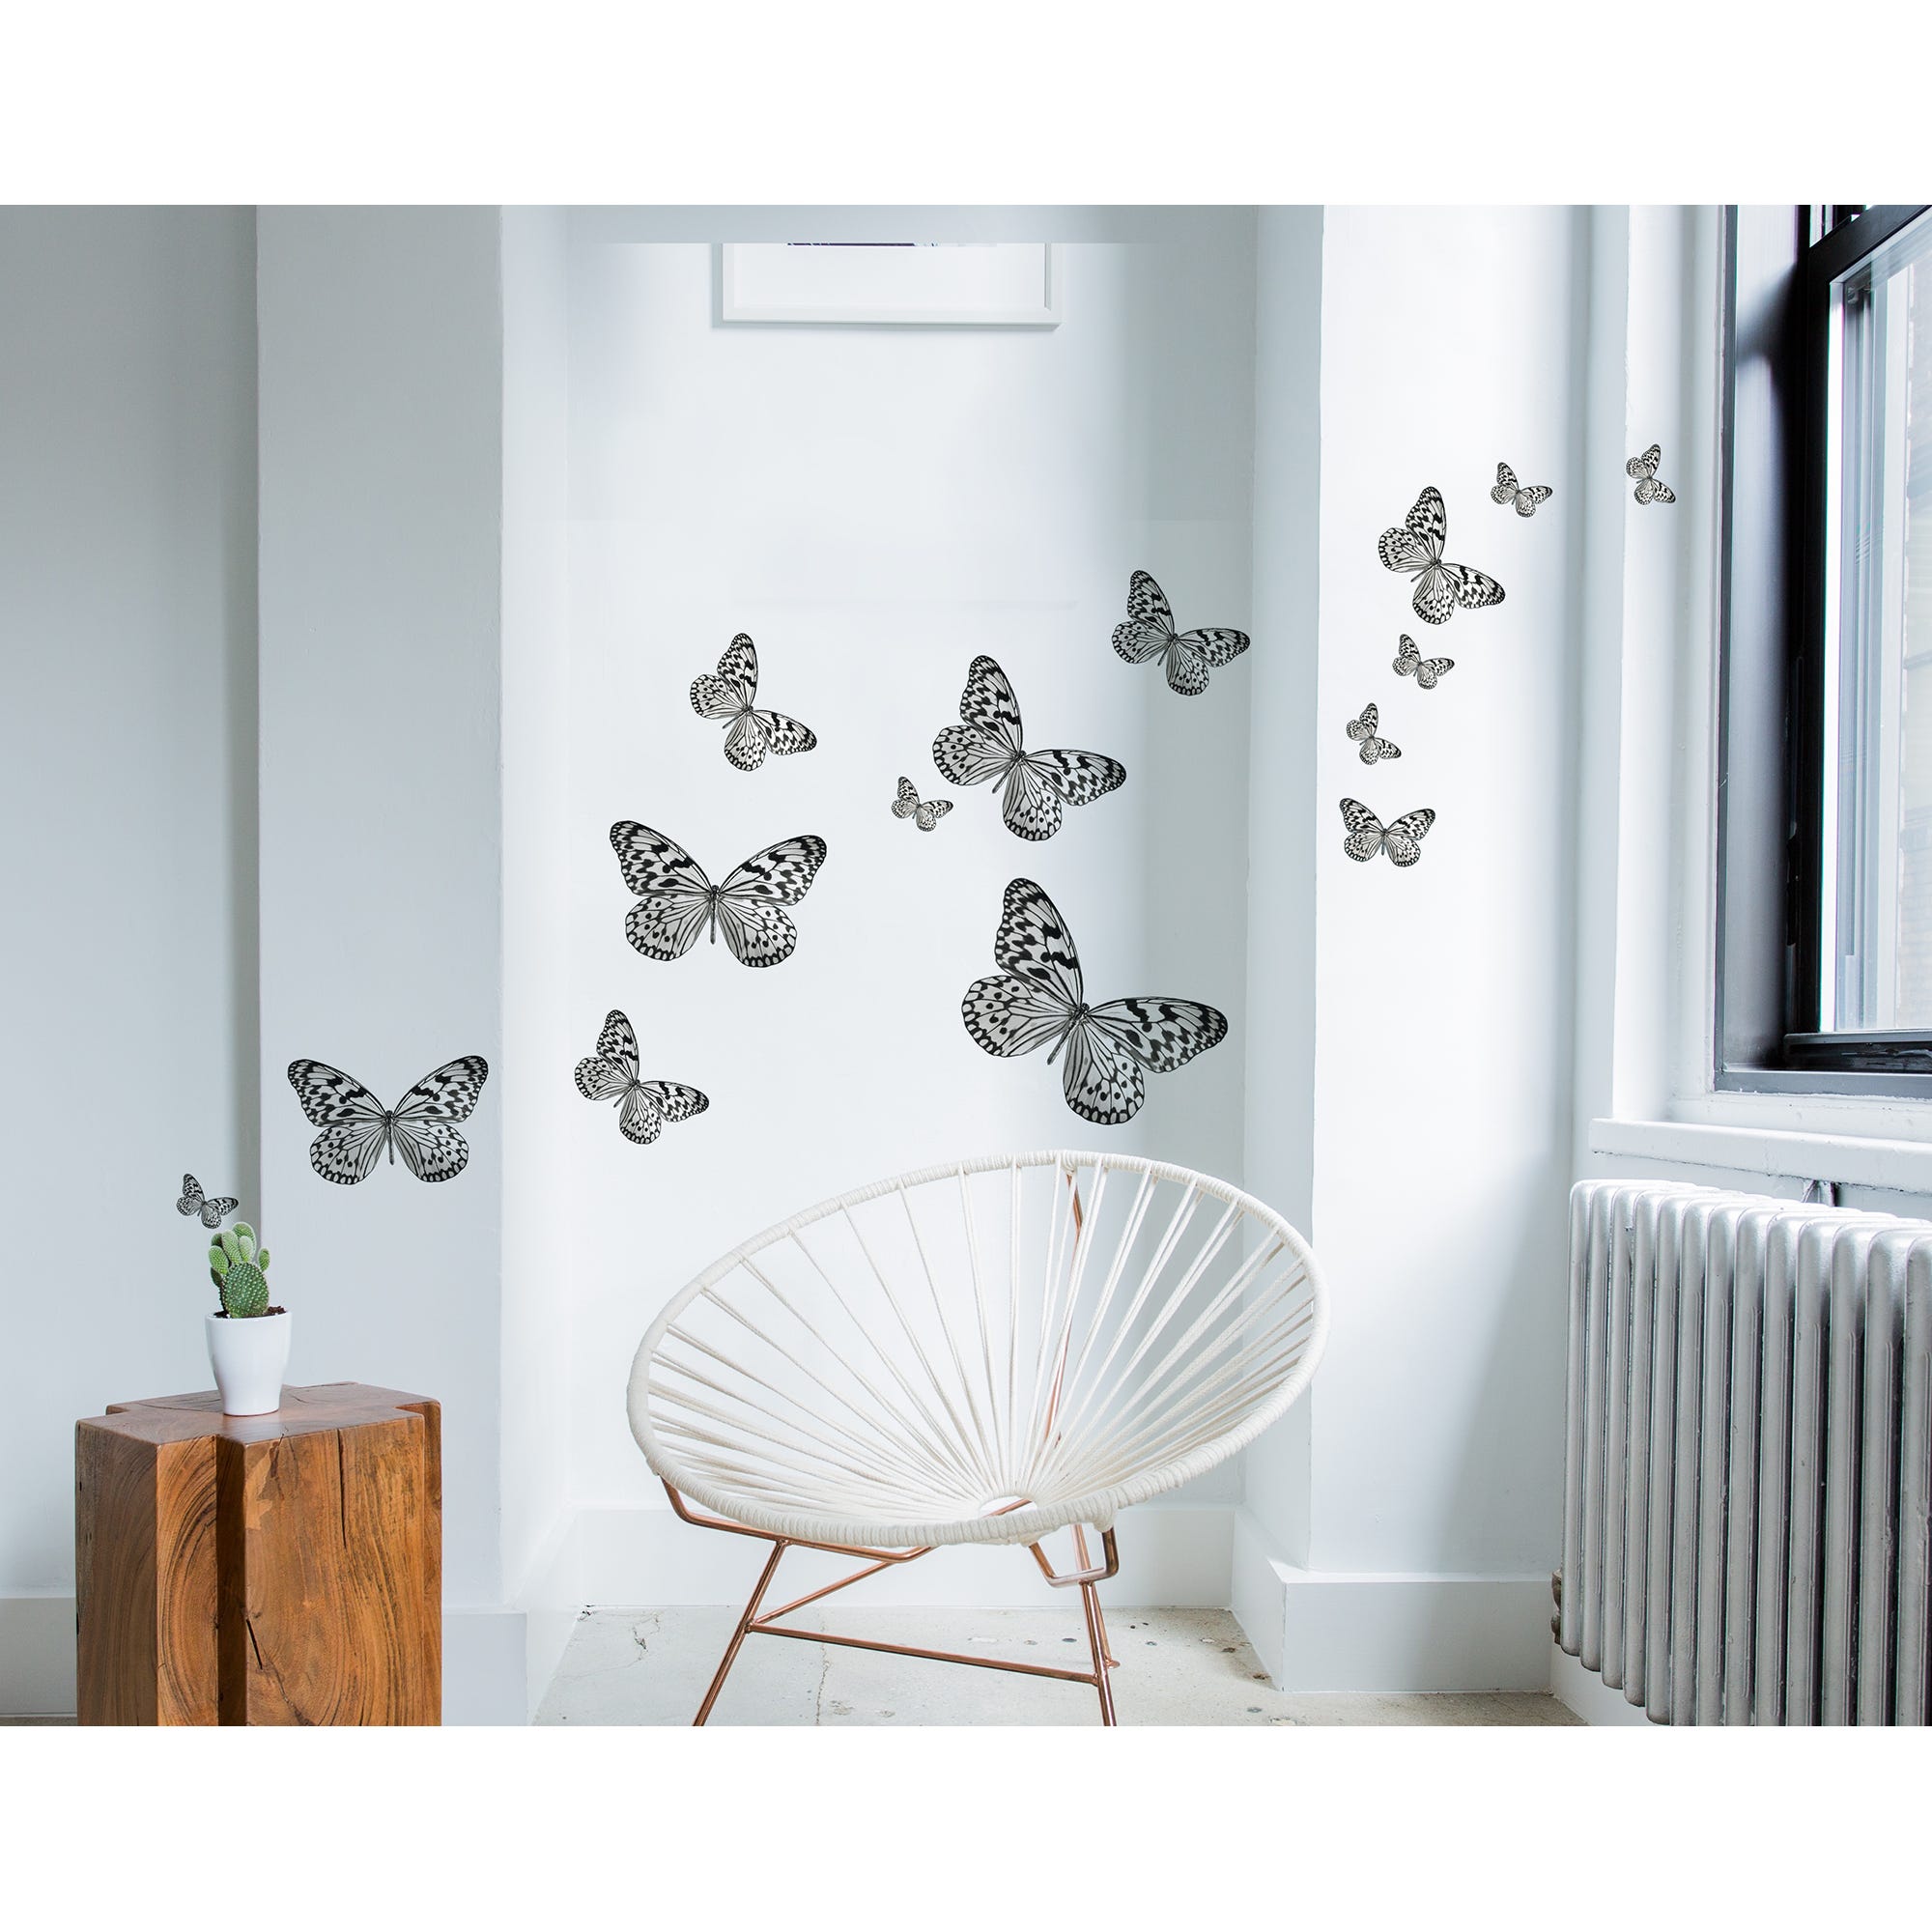 Stickers y vinilos decorativos, ilustración de mariposas en blanco y negro  de diferentes tamaños, 68 cm x 48 cm